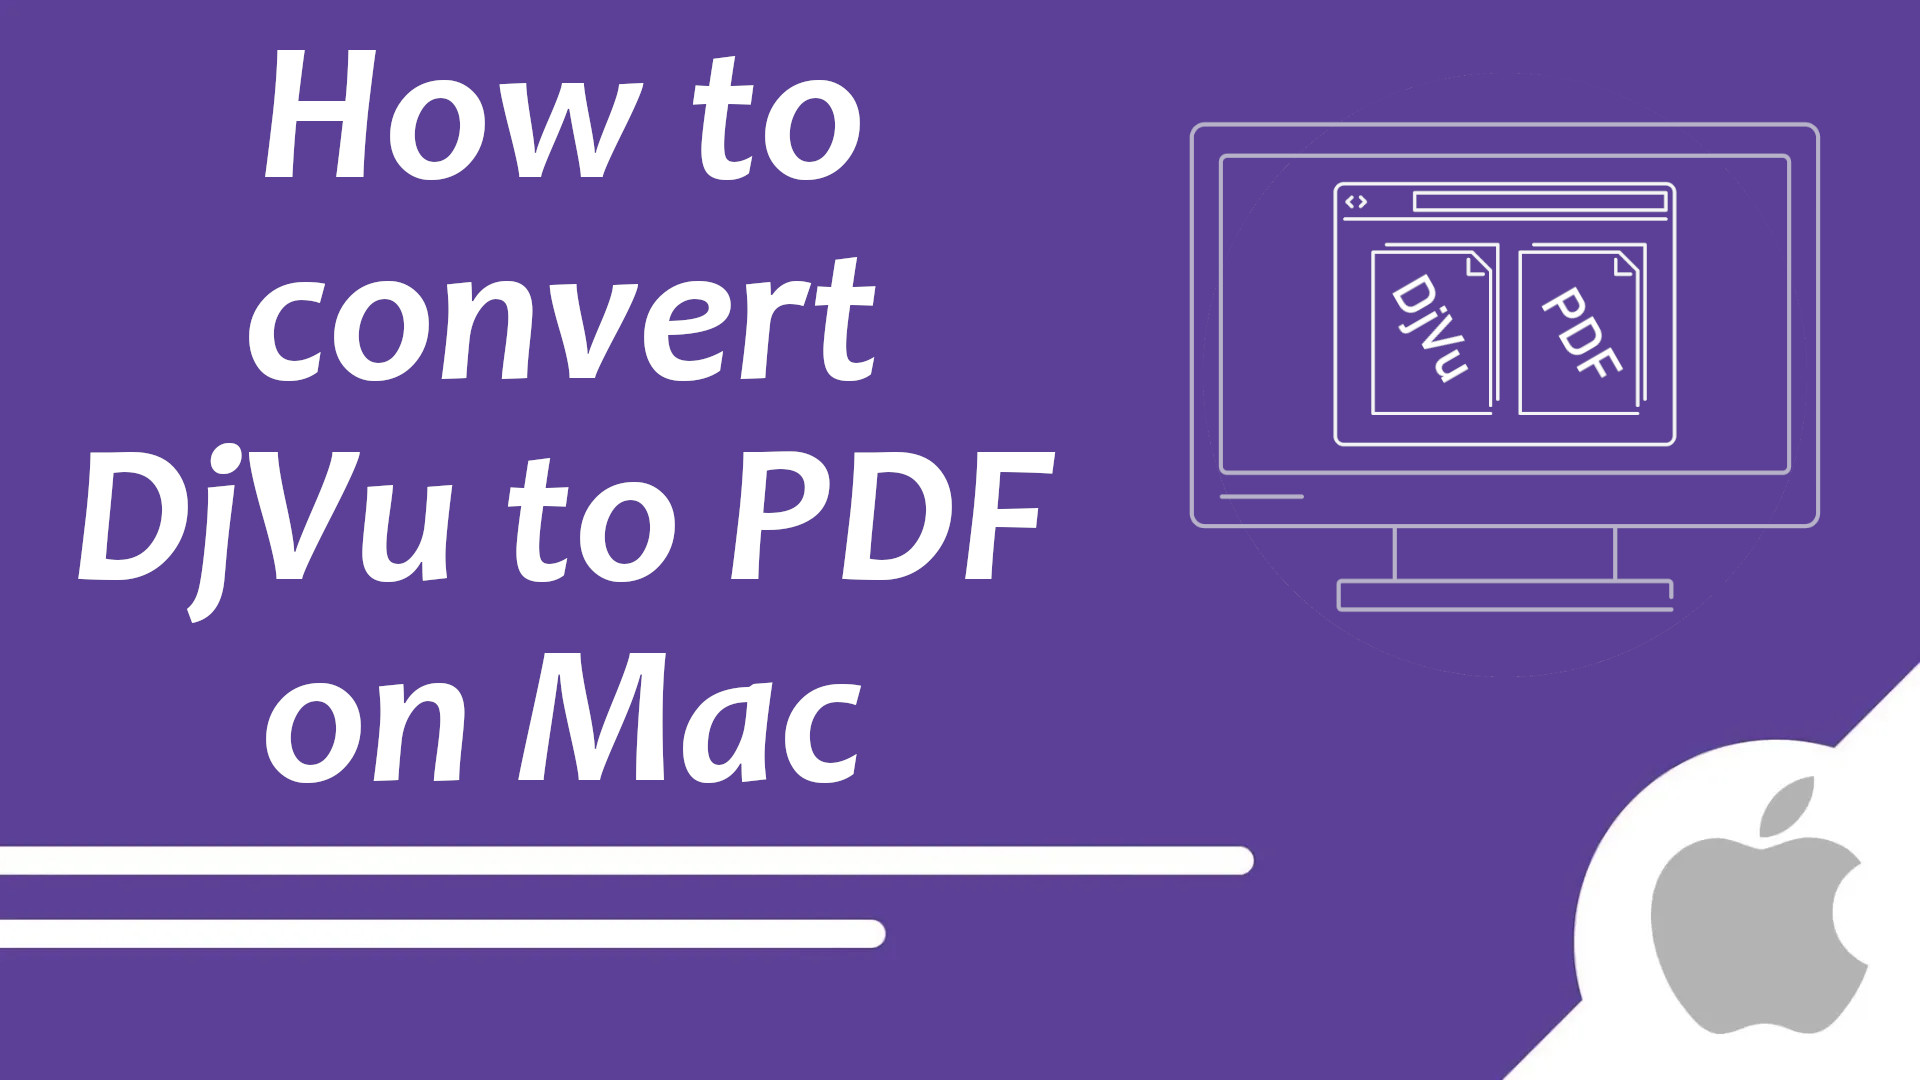 So konvertieren Sie DJVU in PDF auf dem Mac